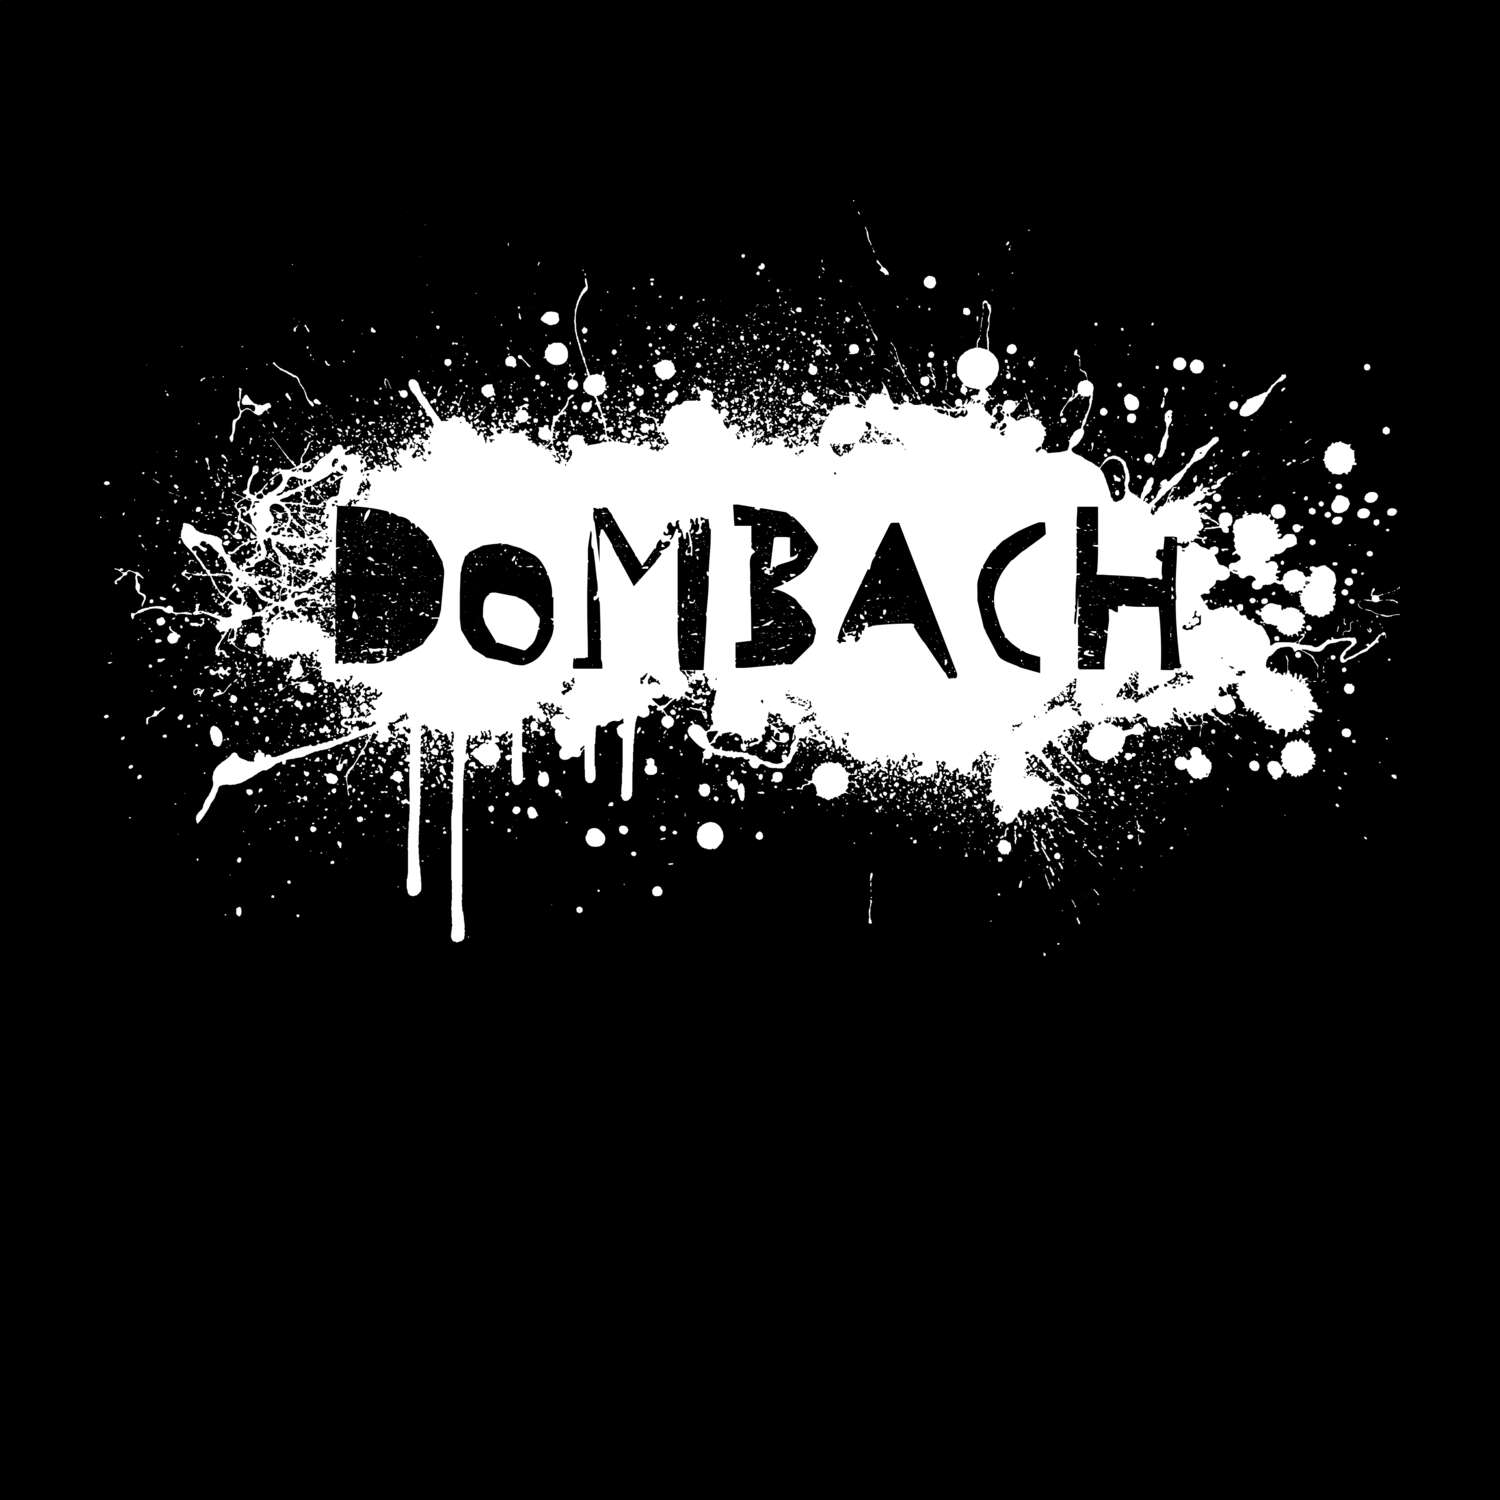 Dombach T-Shirt »Paint Splash Punk«